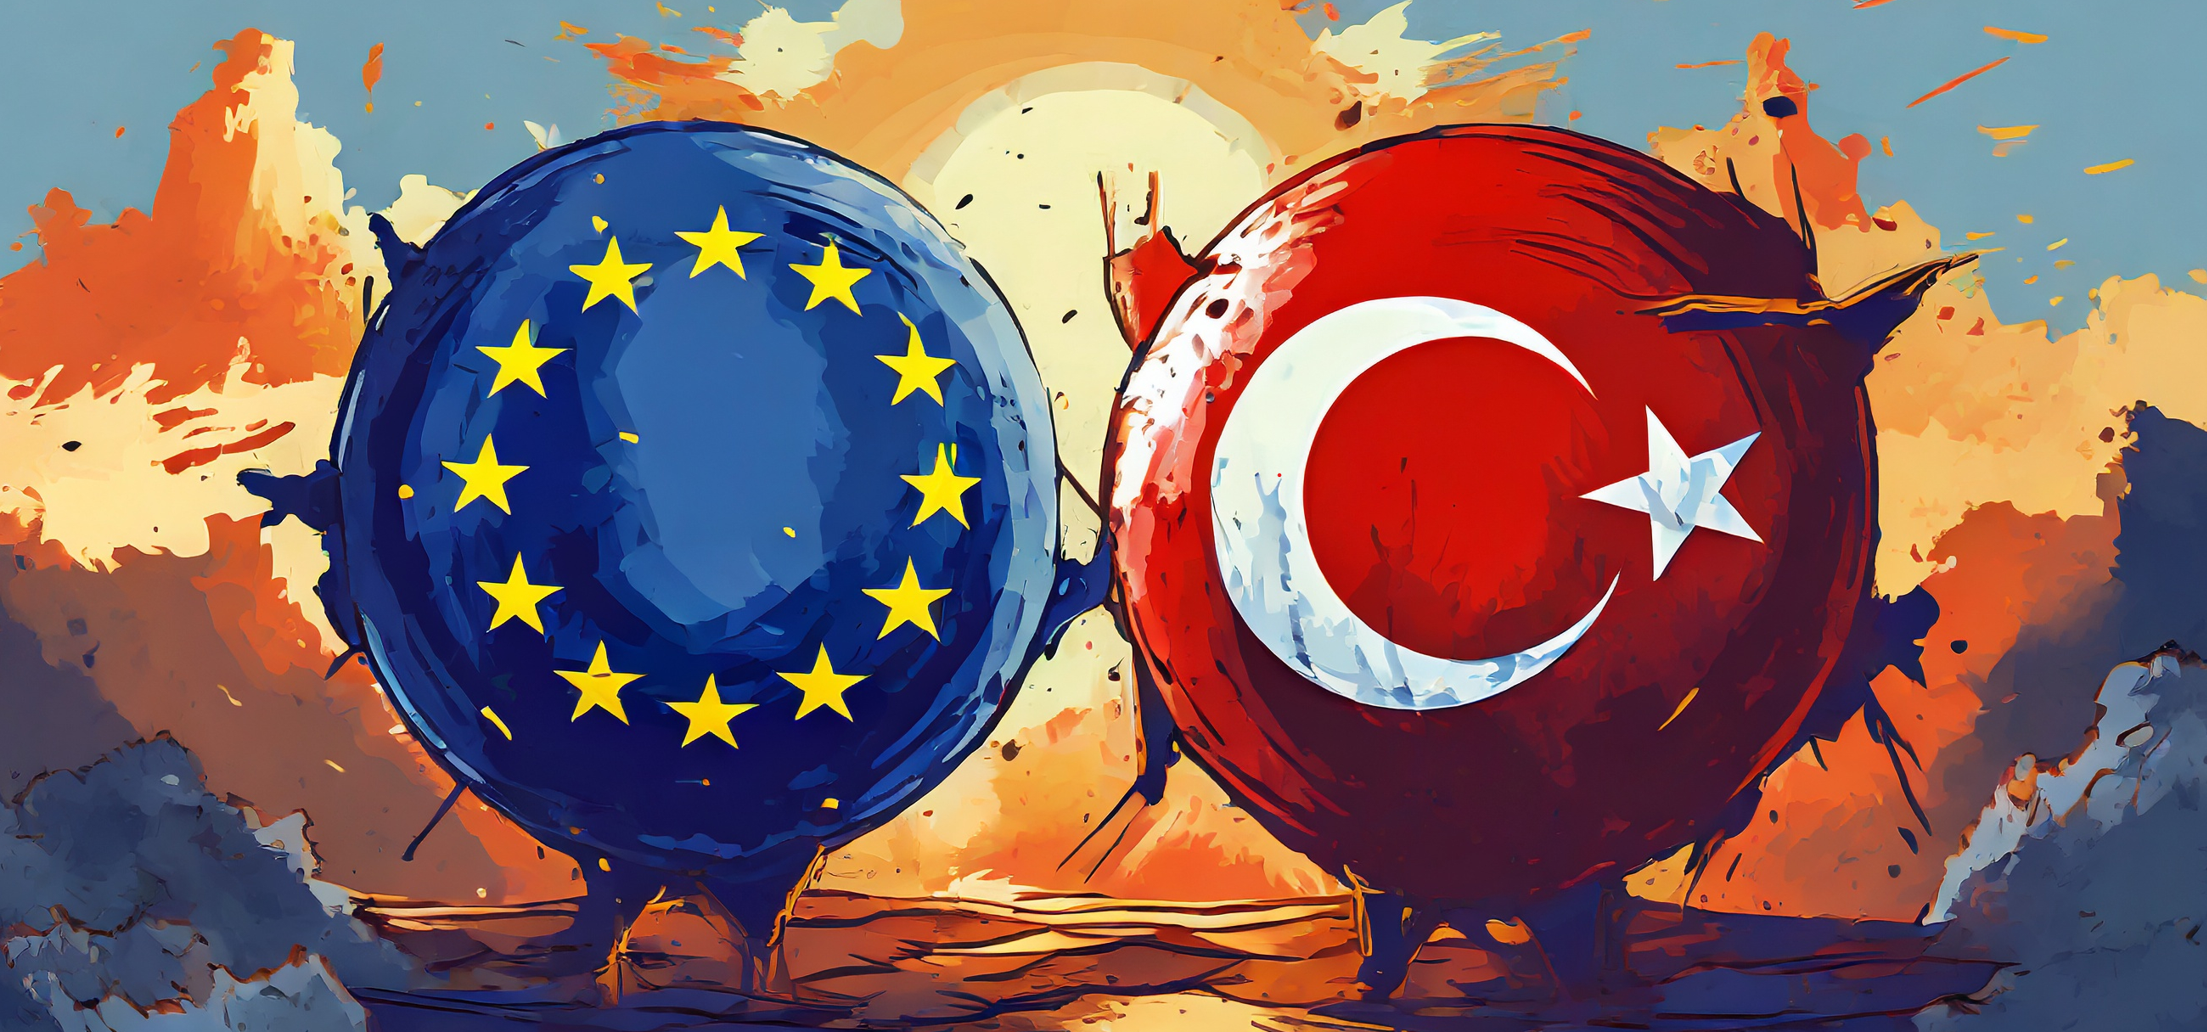 Türkiye-AB ilişkilerinde olmayan siyasi irade ve kandırılmak